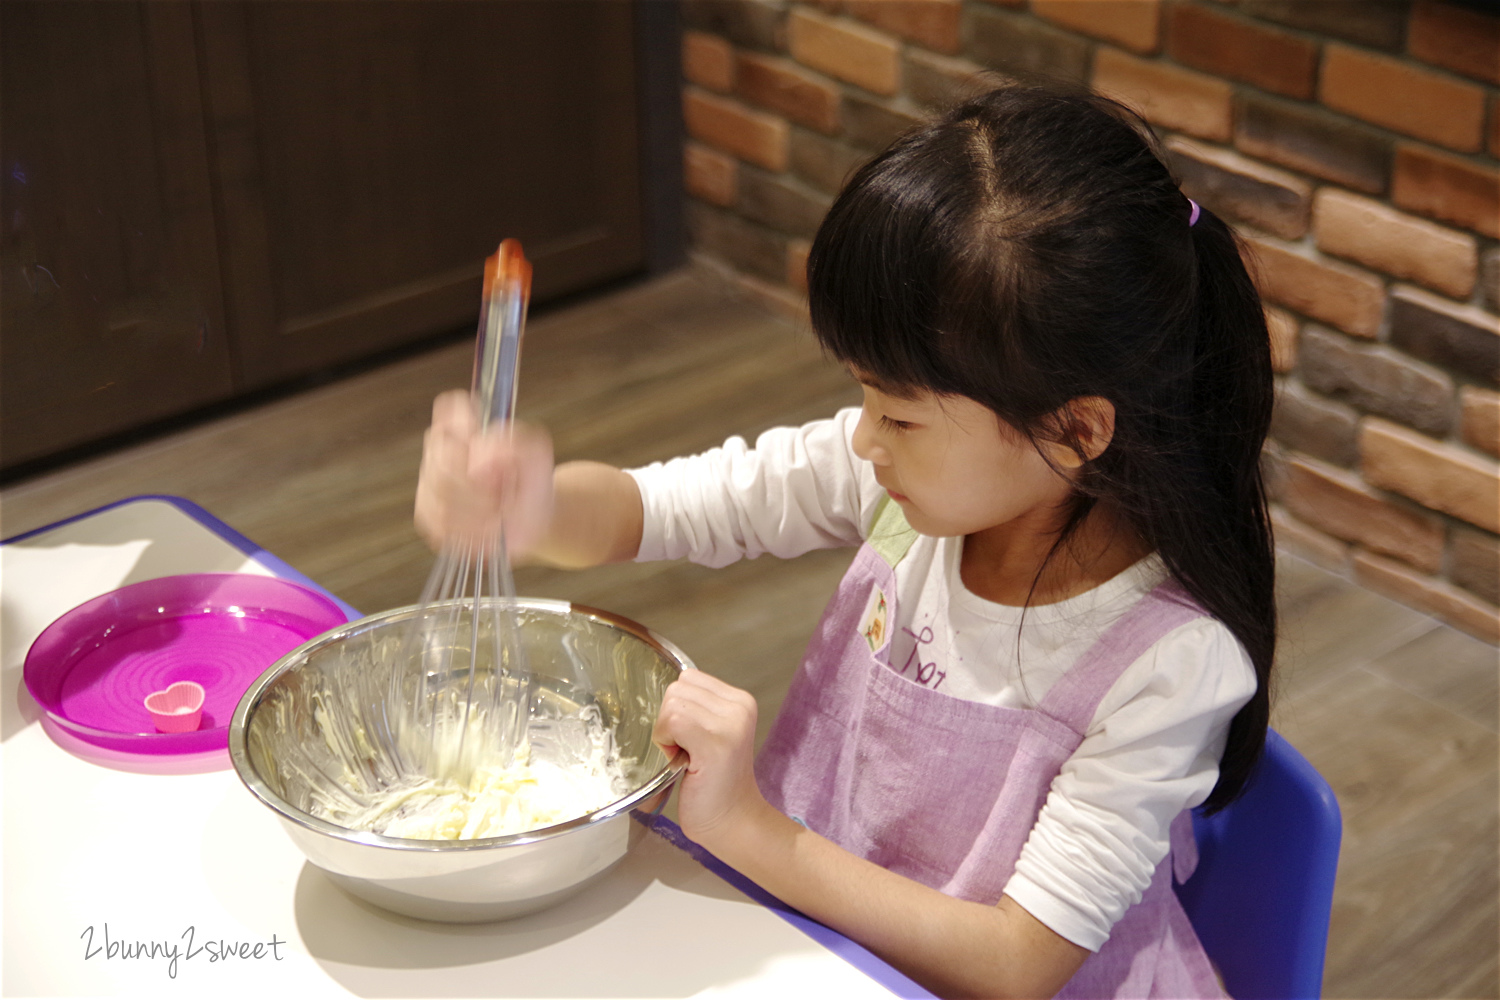 [台北。親子活動] 育家圓 family forever~在高質感廚房玩烘焙，課程中還有影片欣賞、點心時間、遊戲放風和美勞 DIY~前所未有的超豐富親子烘焙課程就在這兒 @兔兒毛毛姊妹花